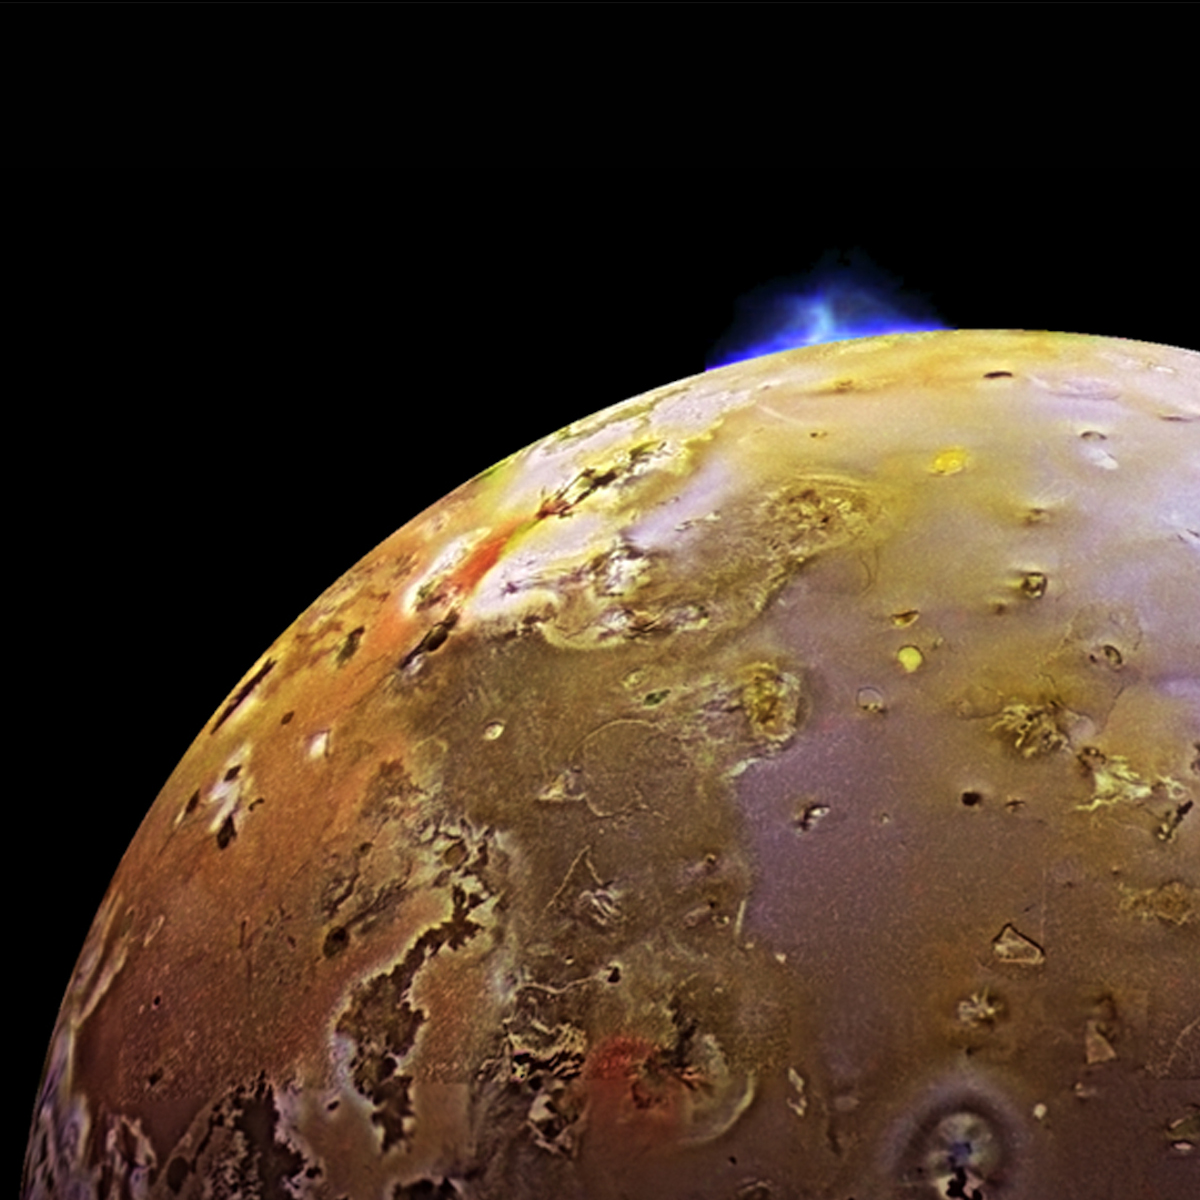 Ein halber Mond Io mit gelber Oberfläche, pockennarbigen grauen und bläulichen Bereichen. Gegen den schwarzen Weltraum zeichnet sich eine helle Eruptionswolke ab, die nach oben aufsteigt.